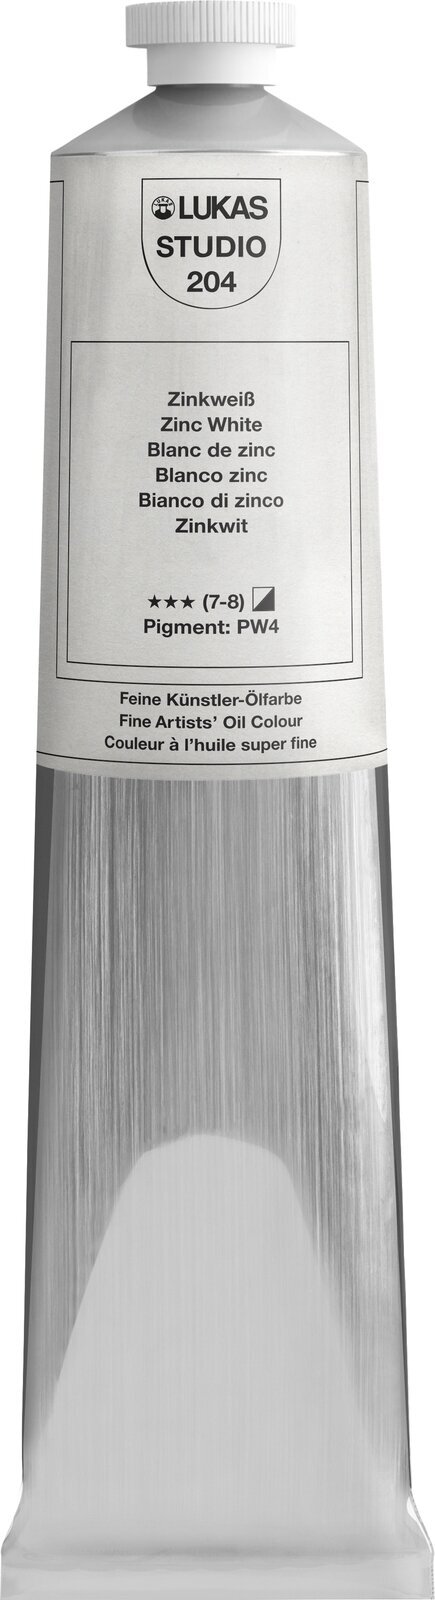 Oil colour Lukas Studio Oil Paint Aluminium Tube Oil Paint Zinc White 200 ml 1 pc